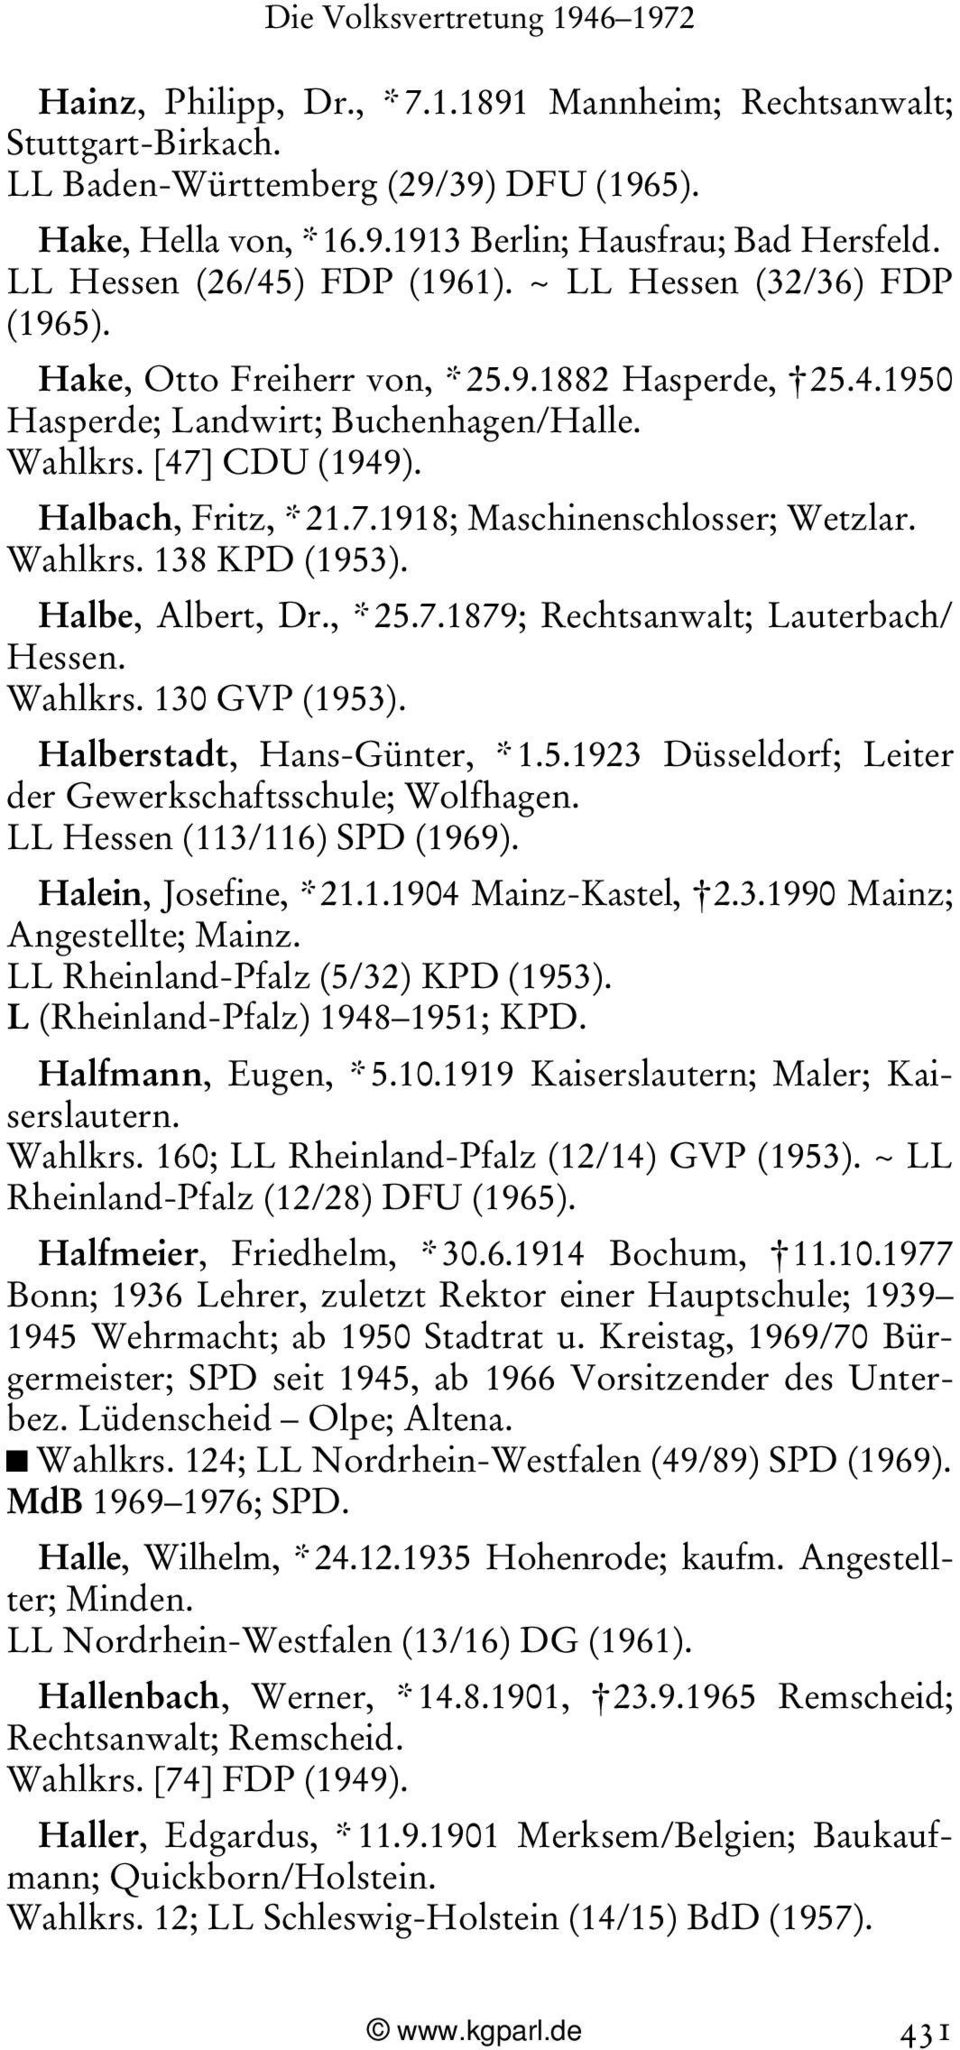 Halbach, Fritz, * 21.7.1918; Maschinenschlosser; Wetzlar. Wahlkrs. 138 KPD (1953). Halbe, Albert, Dr., * 25.7.1879; Rechtsanwalt; Lauterbach/ Hessen. Wahlkrs. 130 GVP (1953).